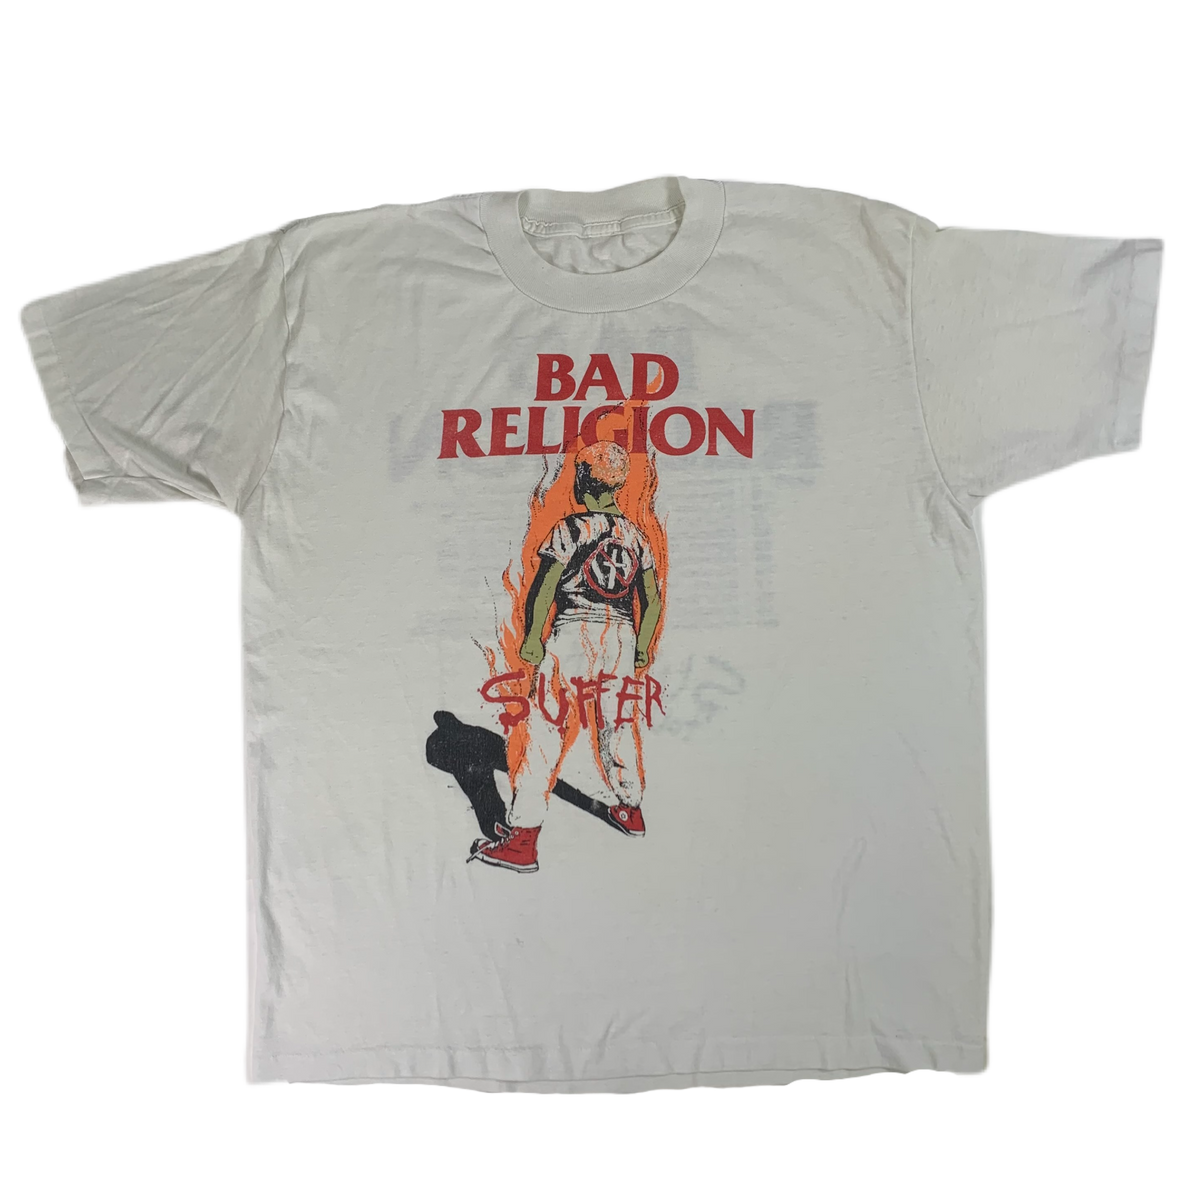 Vintage Bad Religion &quot;Suffer&quot; T-Shirt